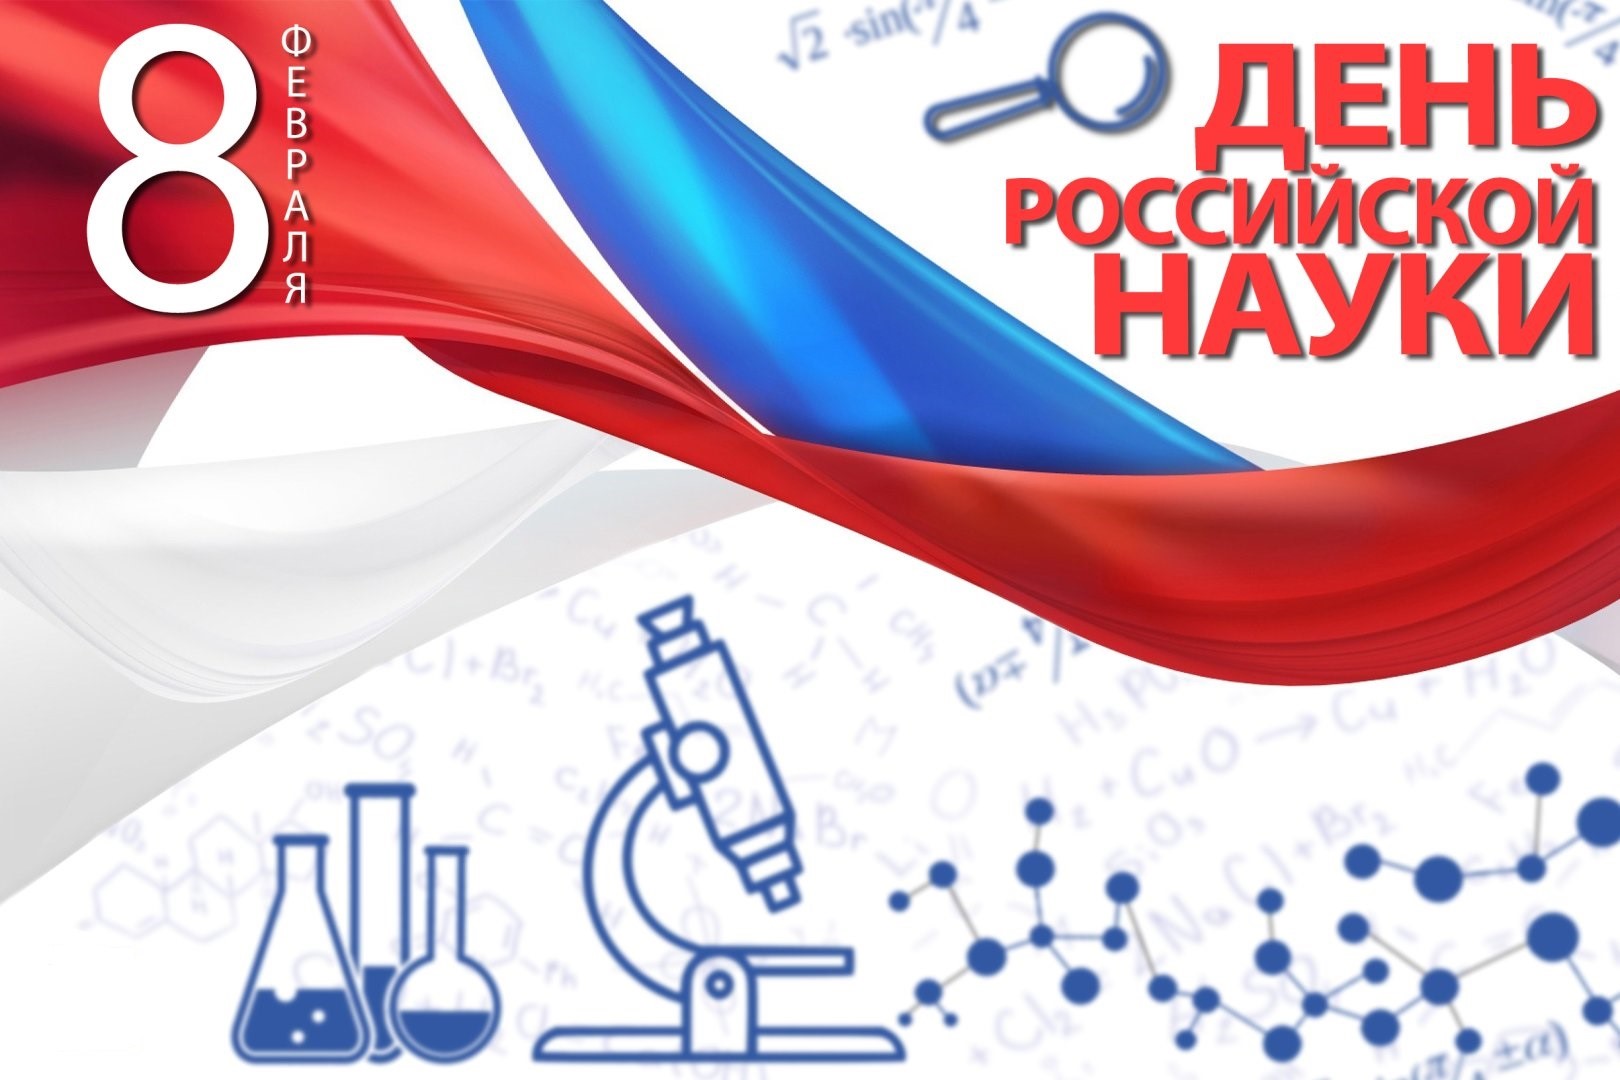 Поздравляем с днем Российской науки